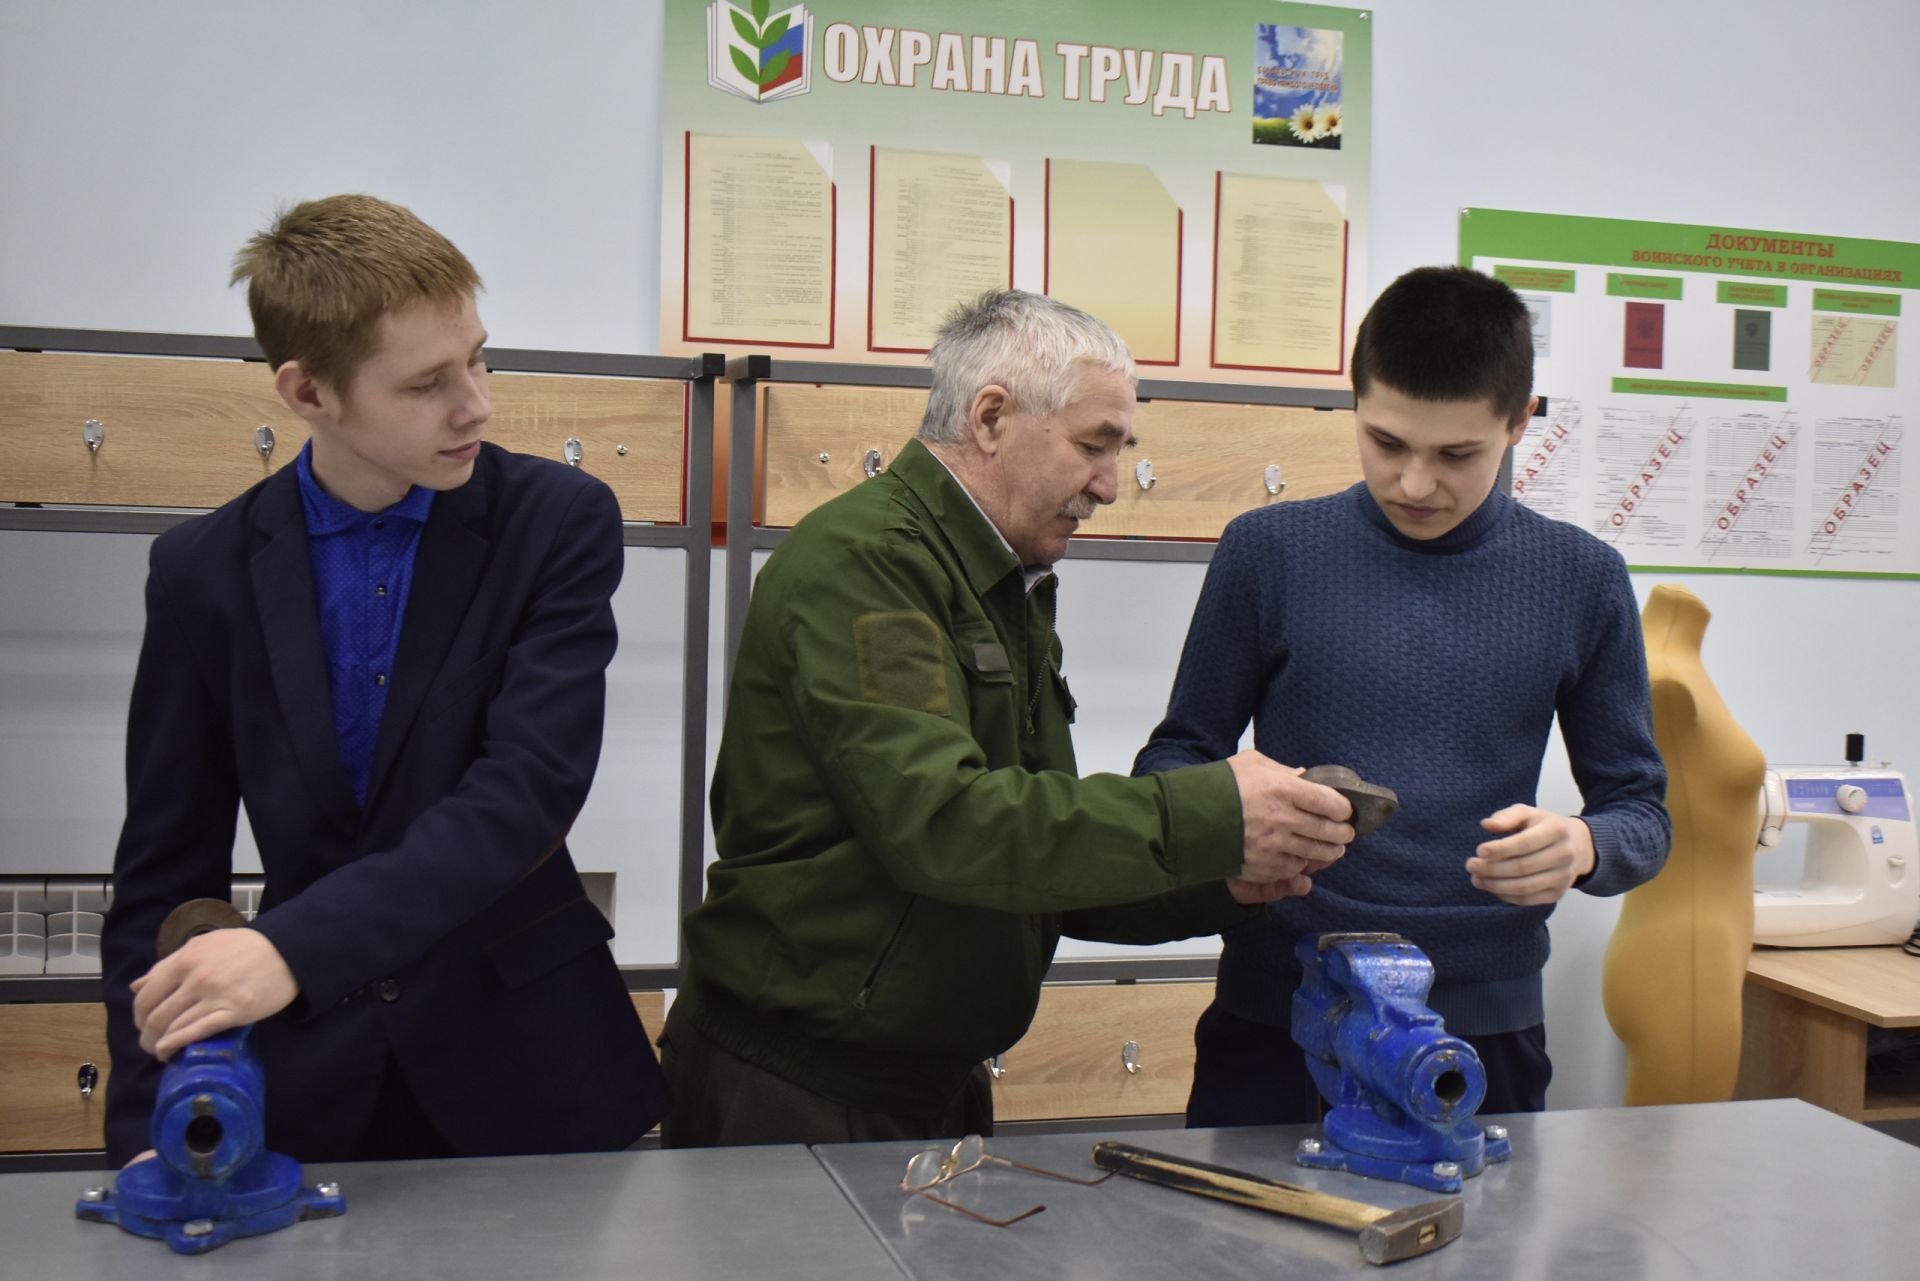 Учащиеся Среднебалтаевской школы обучаются в современных условиях